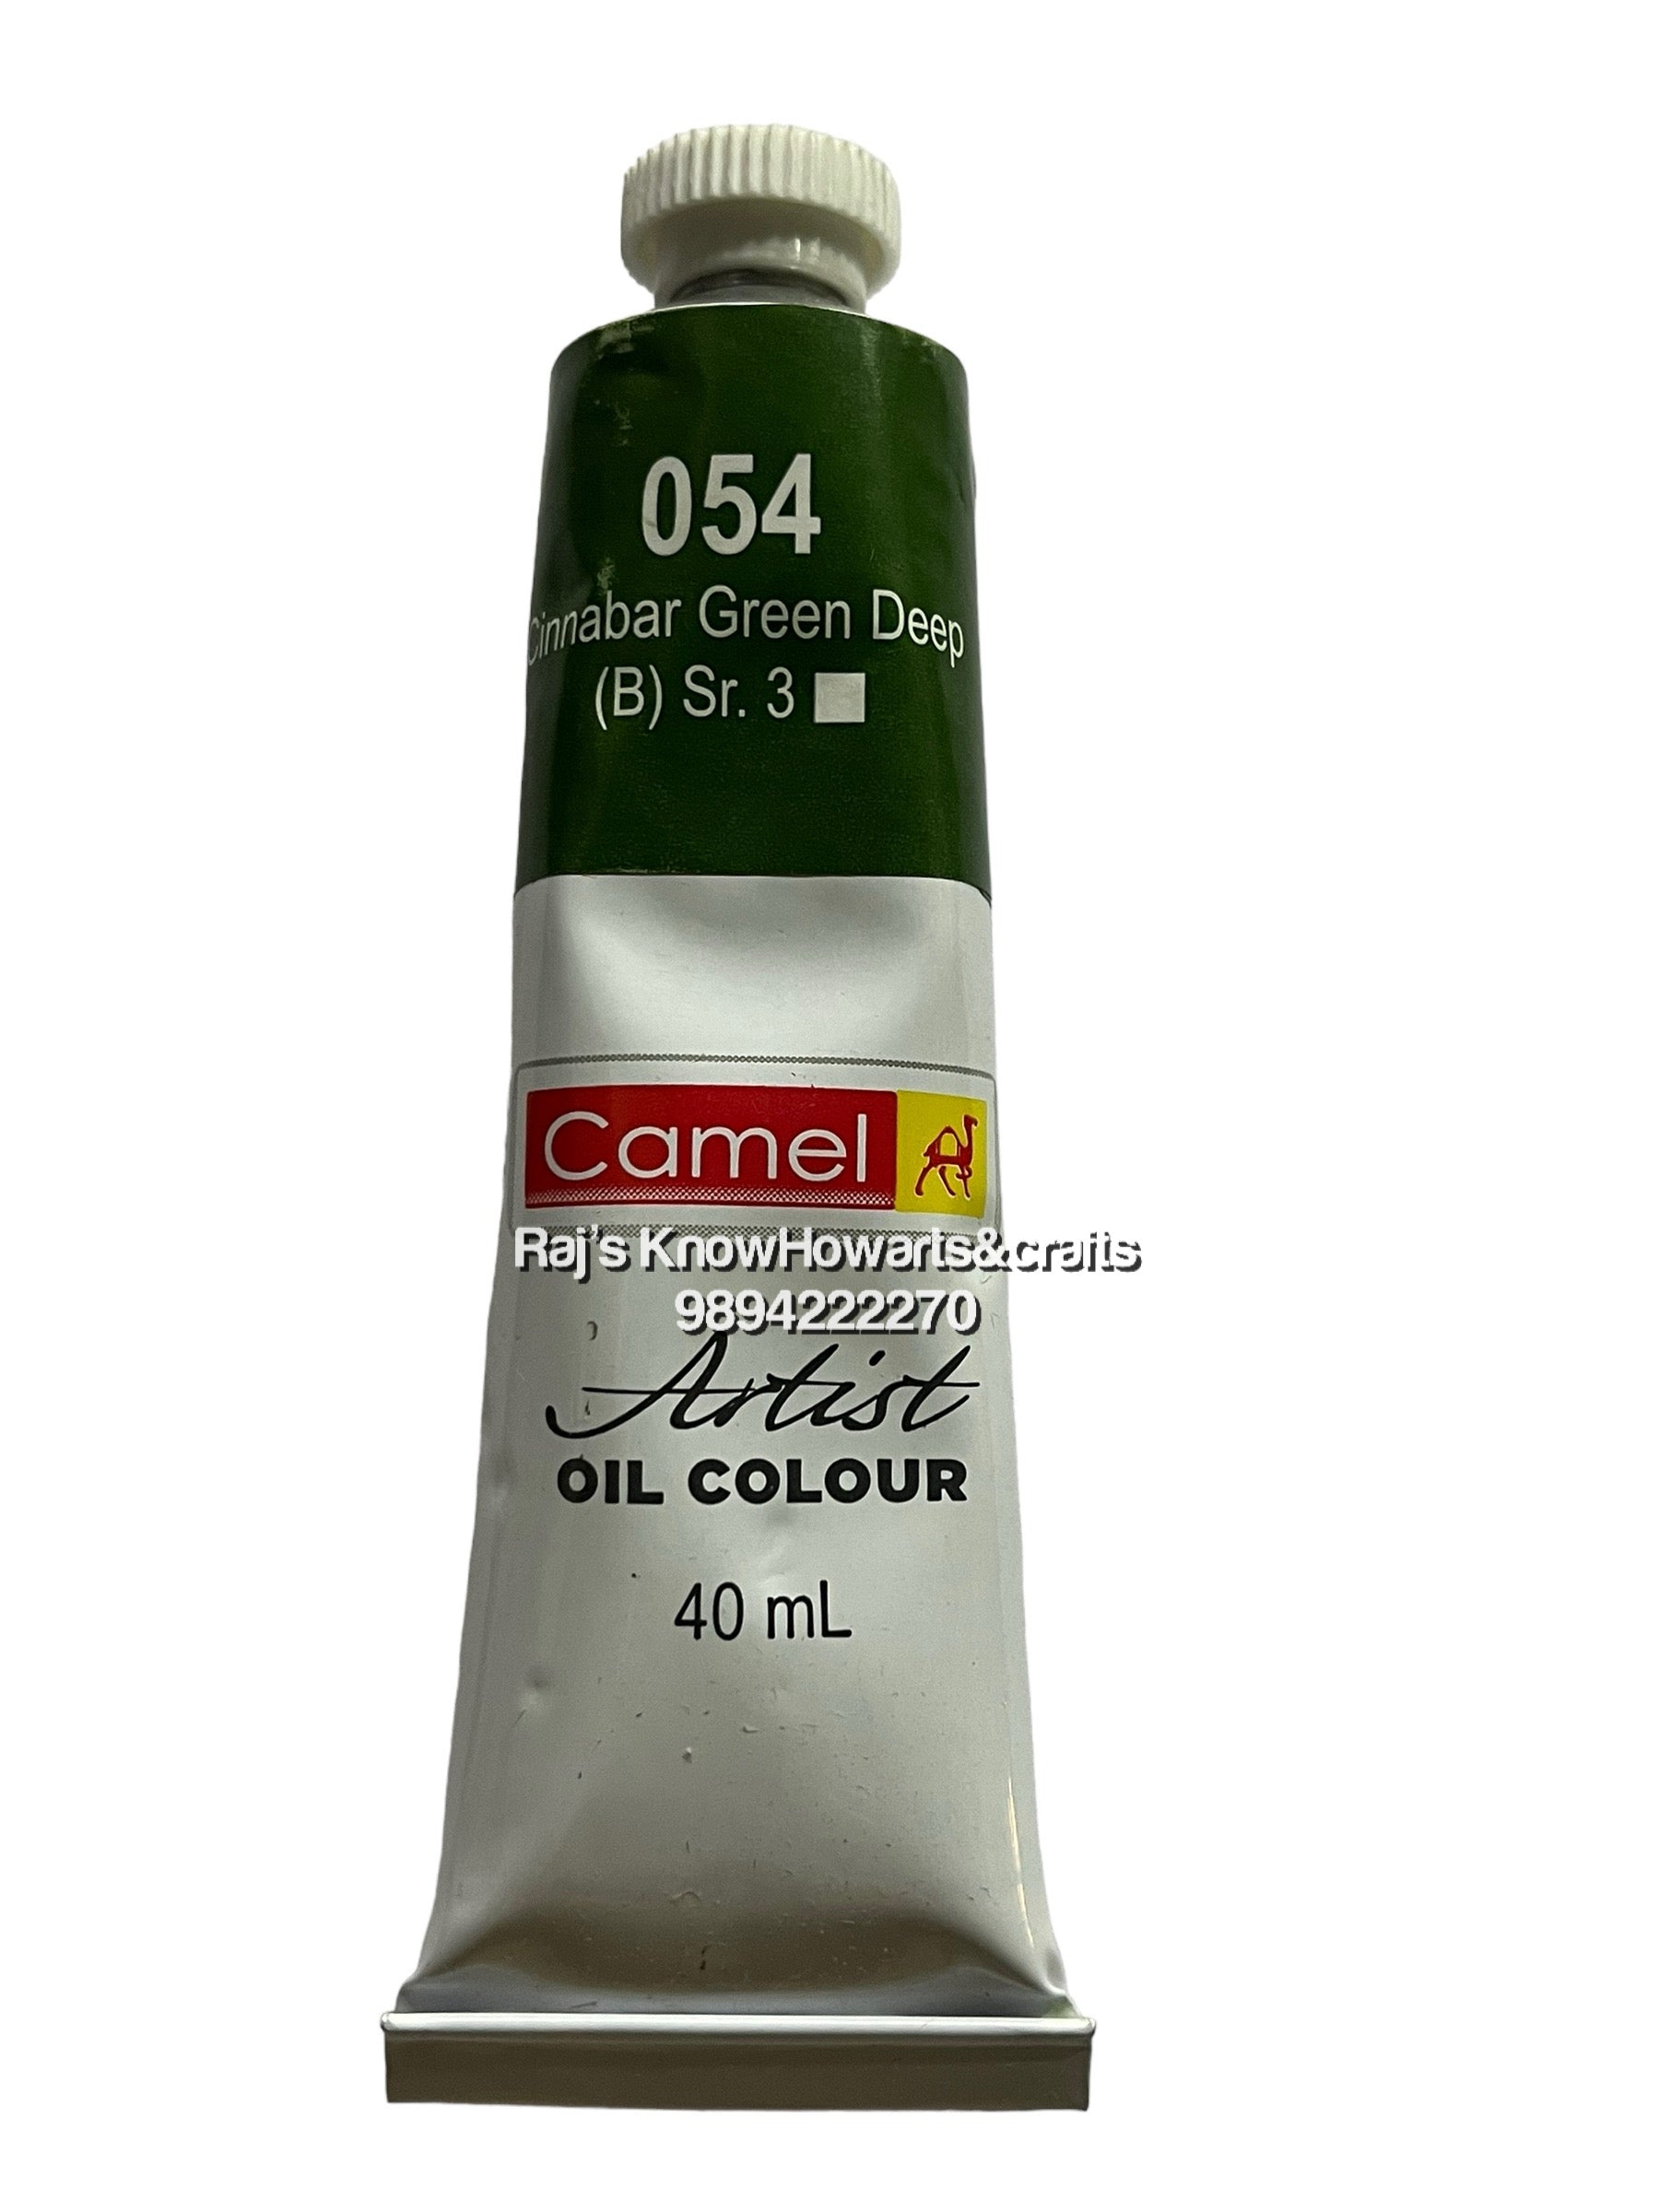 Artist Oil Colours cinnabar green deep 40 ml- 1 tube